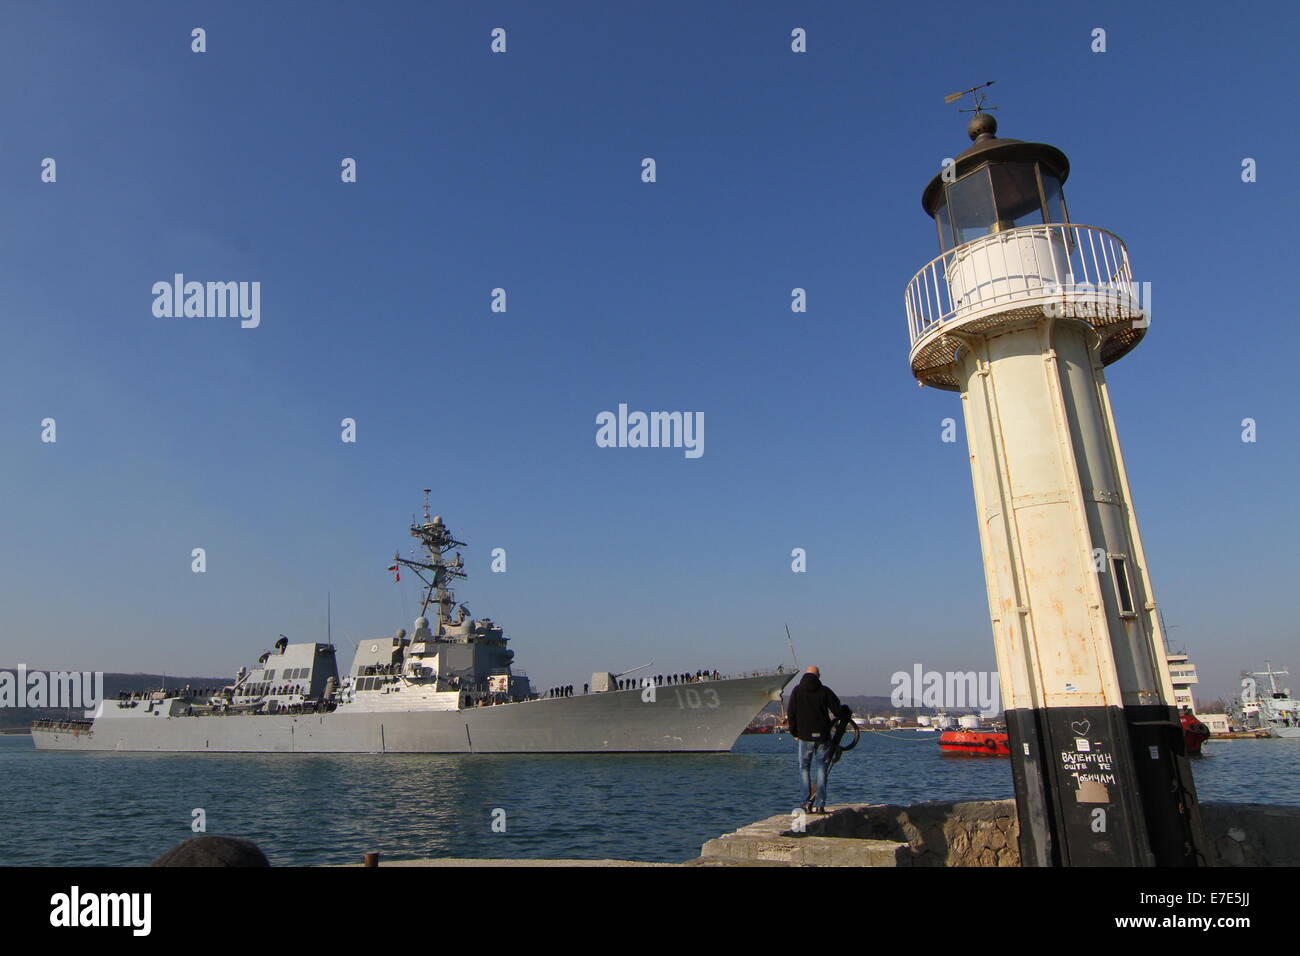 El buque de guerra estadounidense USS Truxtun (DDG-103) entra en el puerto del Mar Negro de Varna, a unos 450 km (280 millas) al noreste de la capital búlgara, Sofia el jueves, 13 de marzo de 2014. La Marina el destructor USS Truxtun toma parte en rumano, búlgaro y conjunta de EE.UU. m Foto de stock